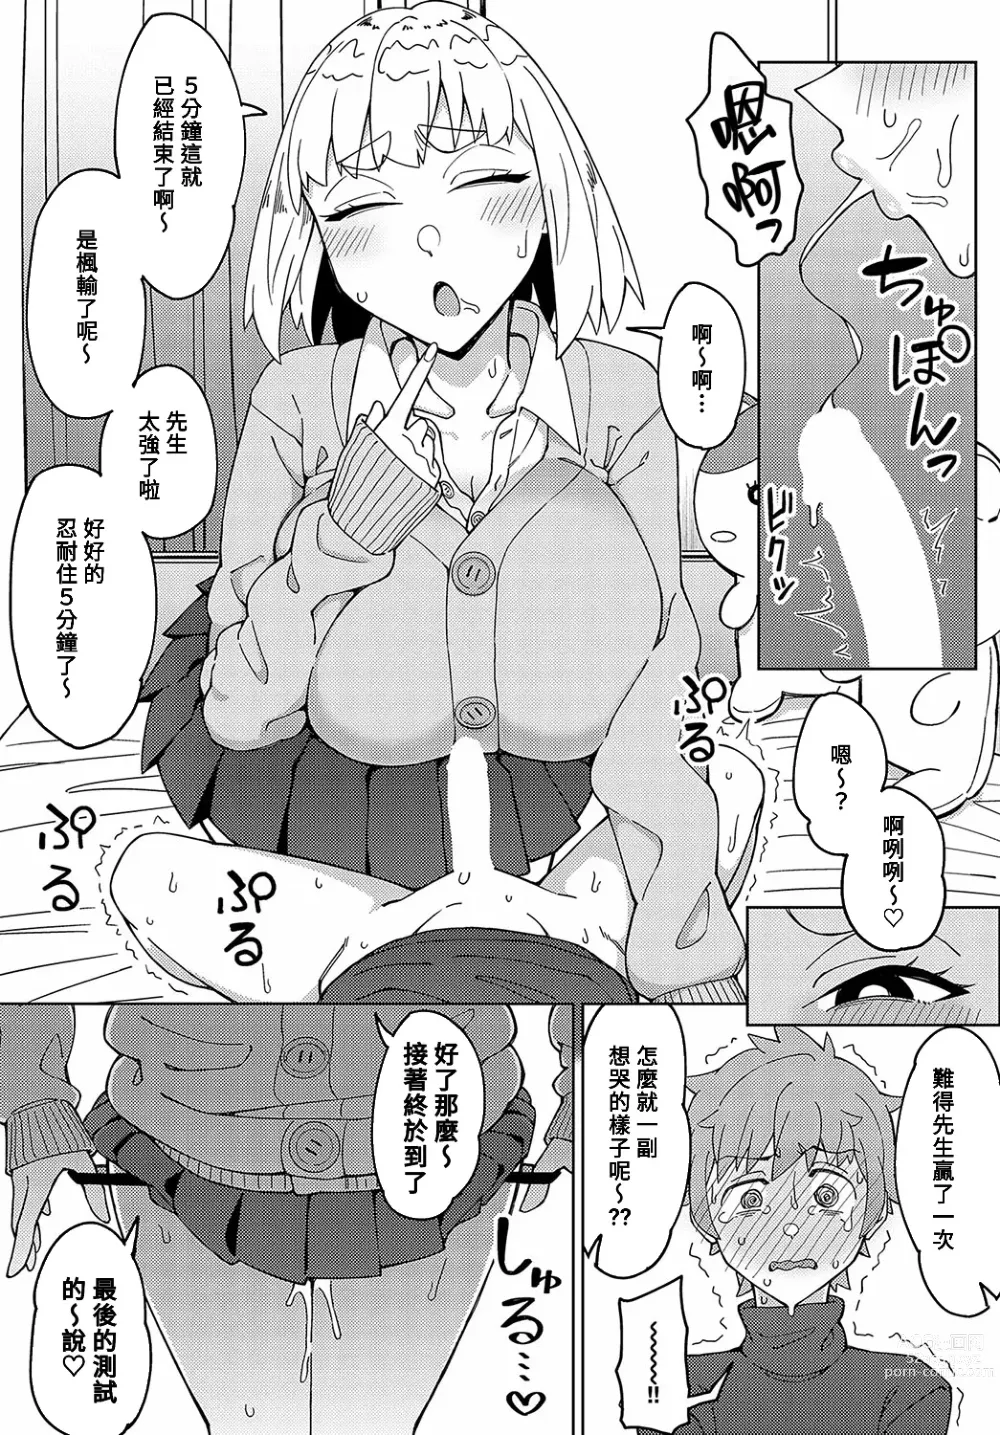 Page 11 of manga Sensei na no ni Makechau no